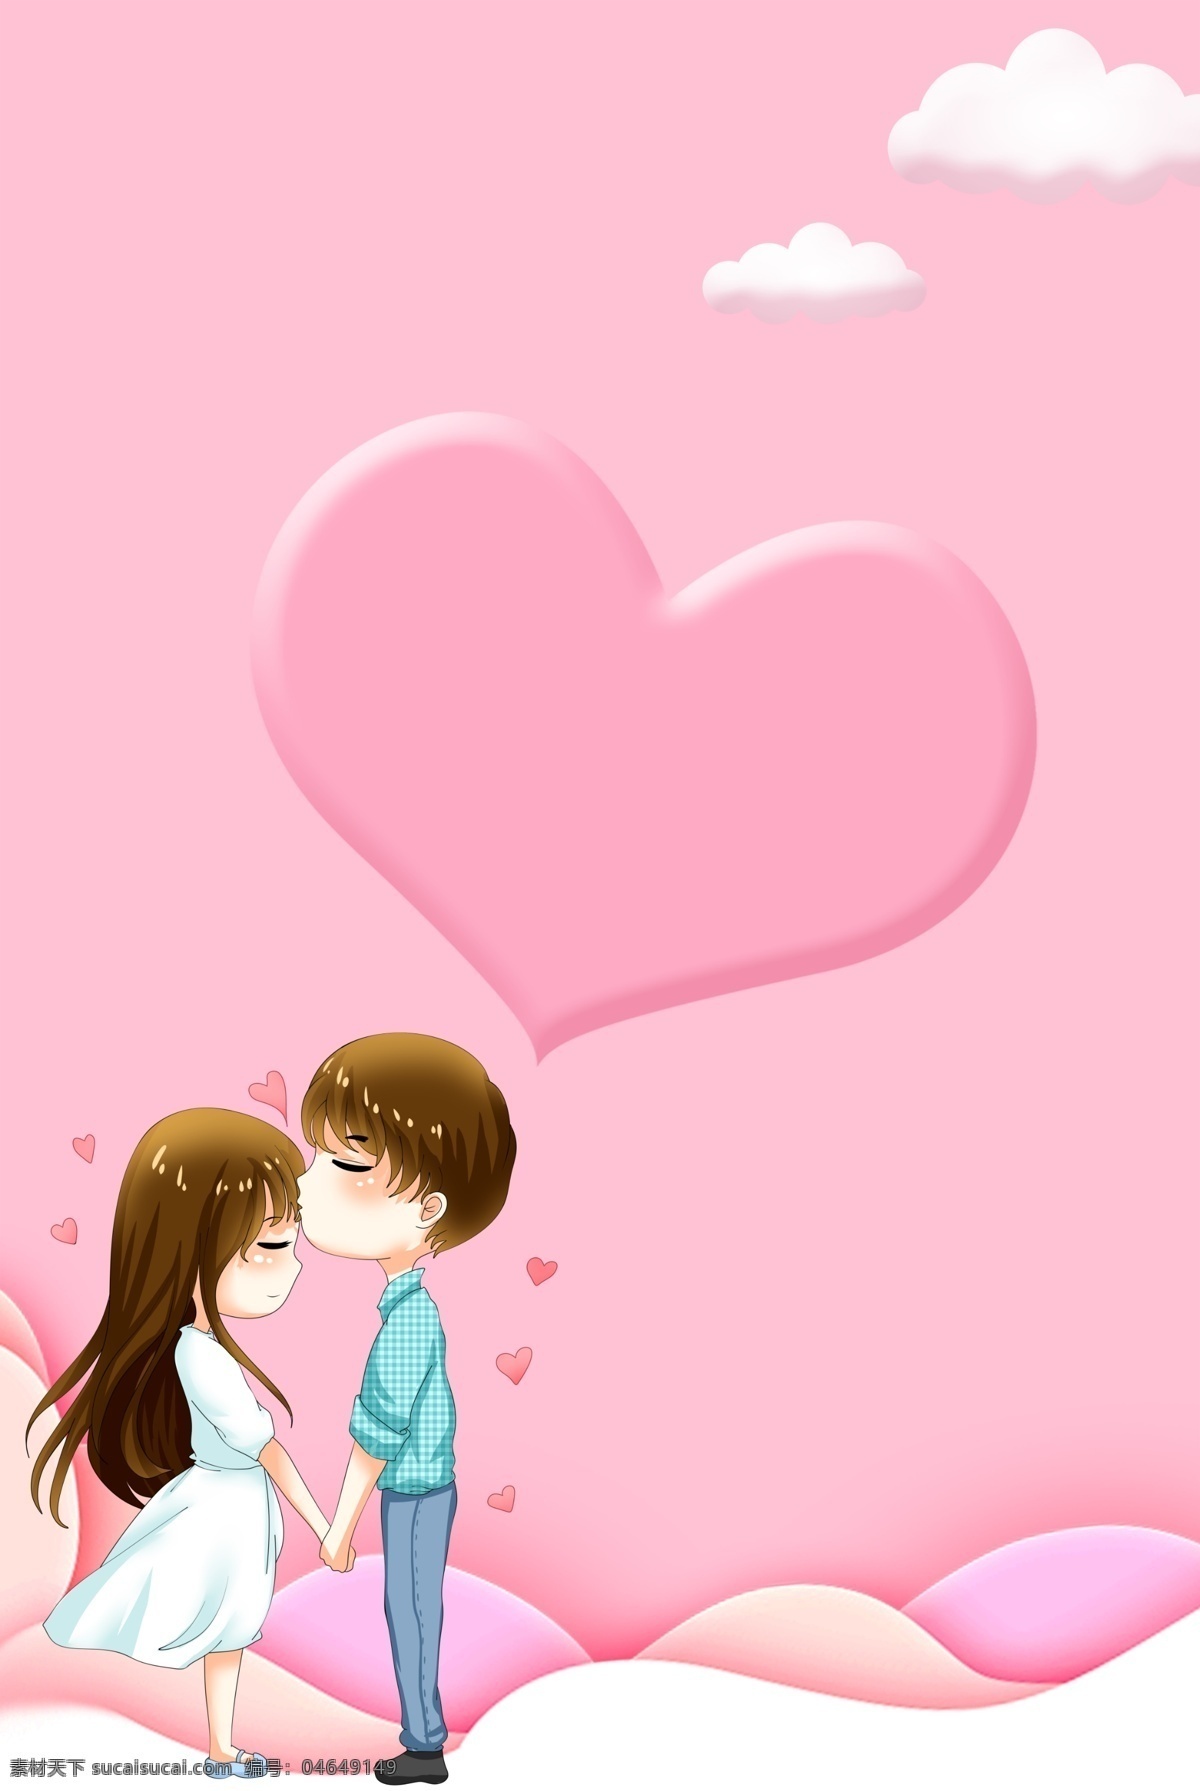 粉色 浪漫 214 情人节 海报 背景 浪漫情人节 卡通情侣 约会 甜蜜 爱情 情人节背景